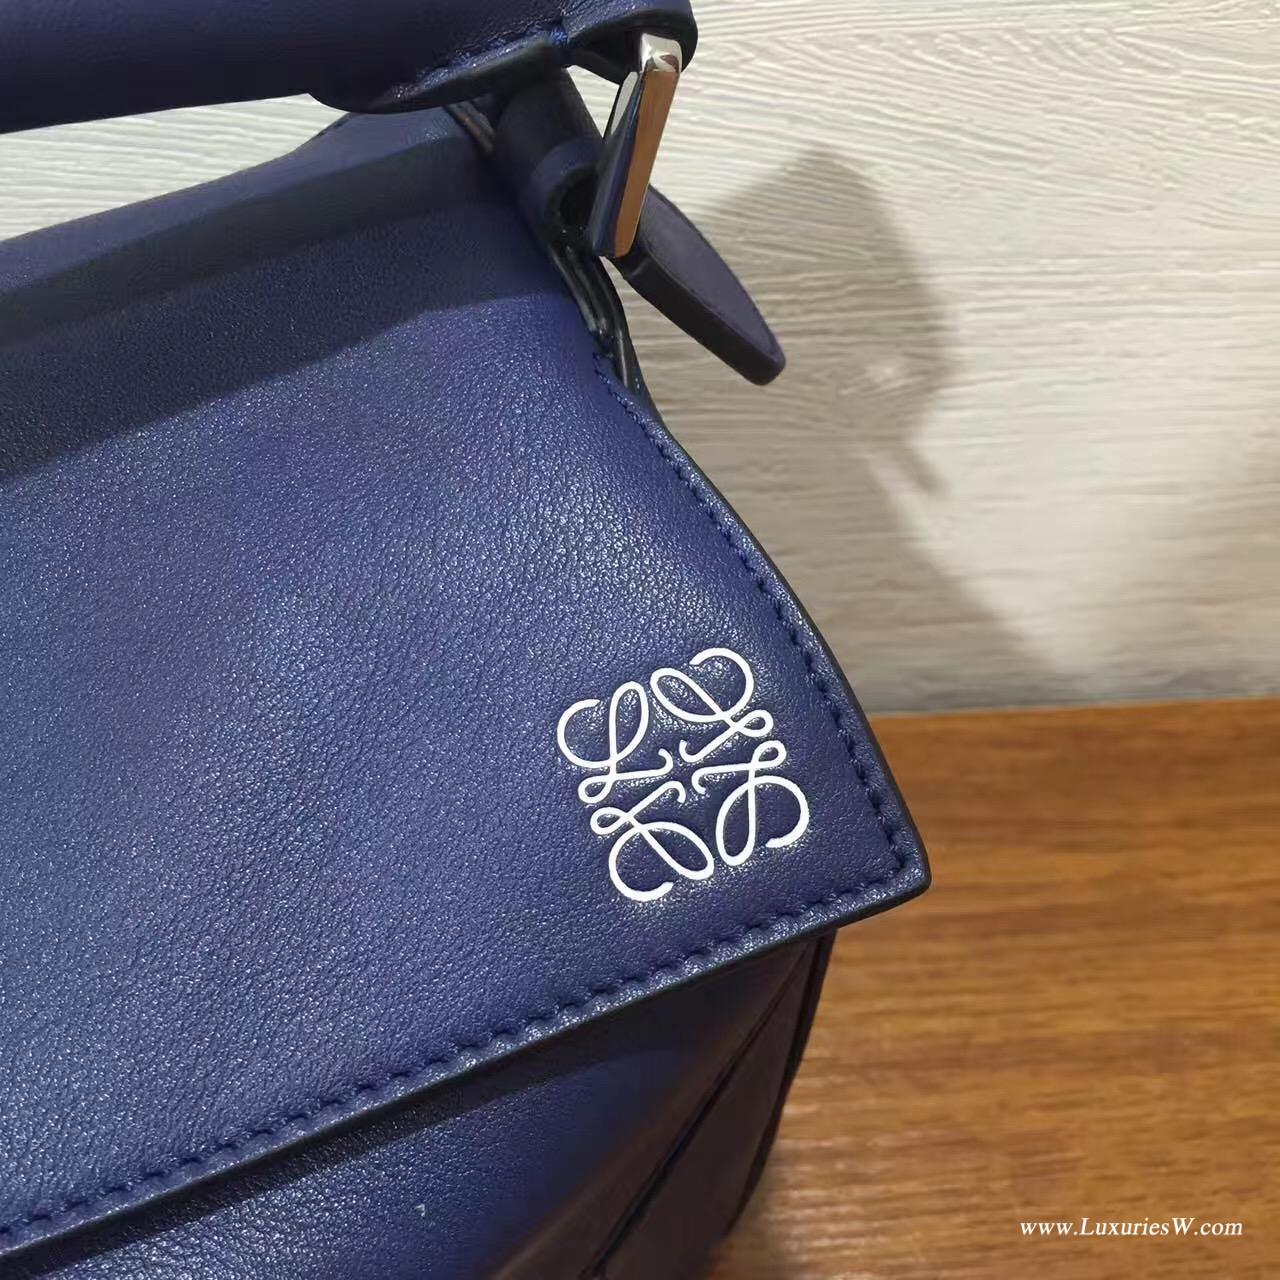 羅意威LOEWE包包 Mini Puzzle Bag 深蓝色 長方體形狀 折疊幾何包